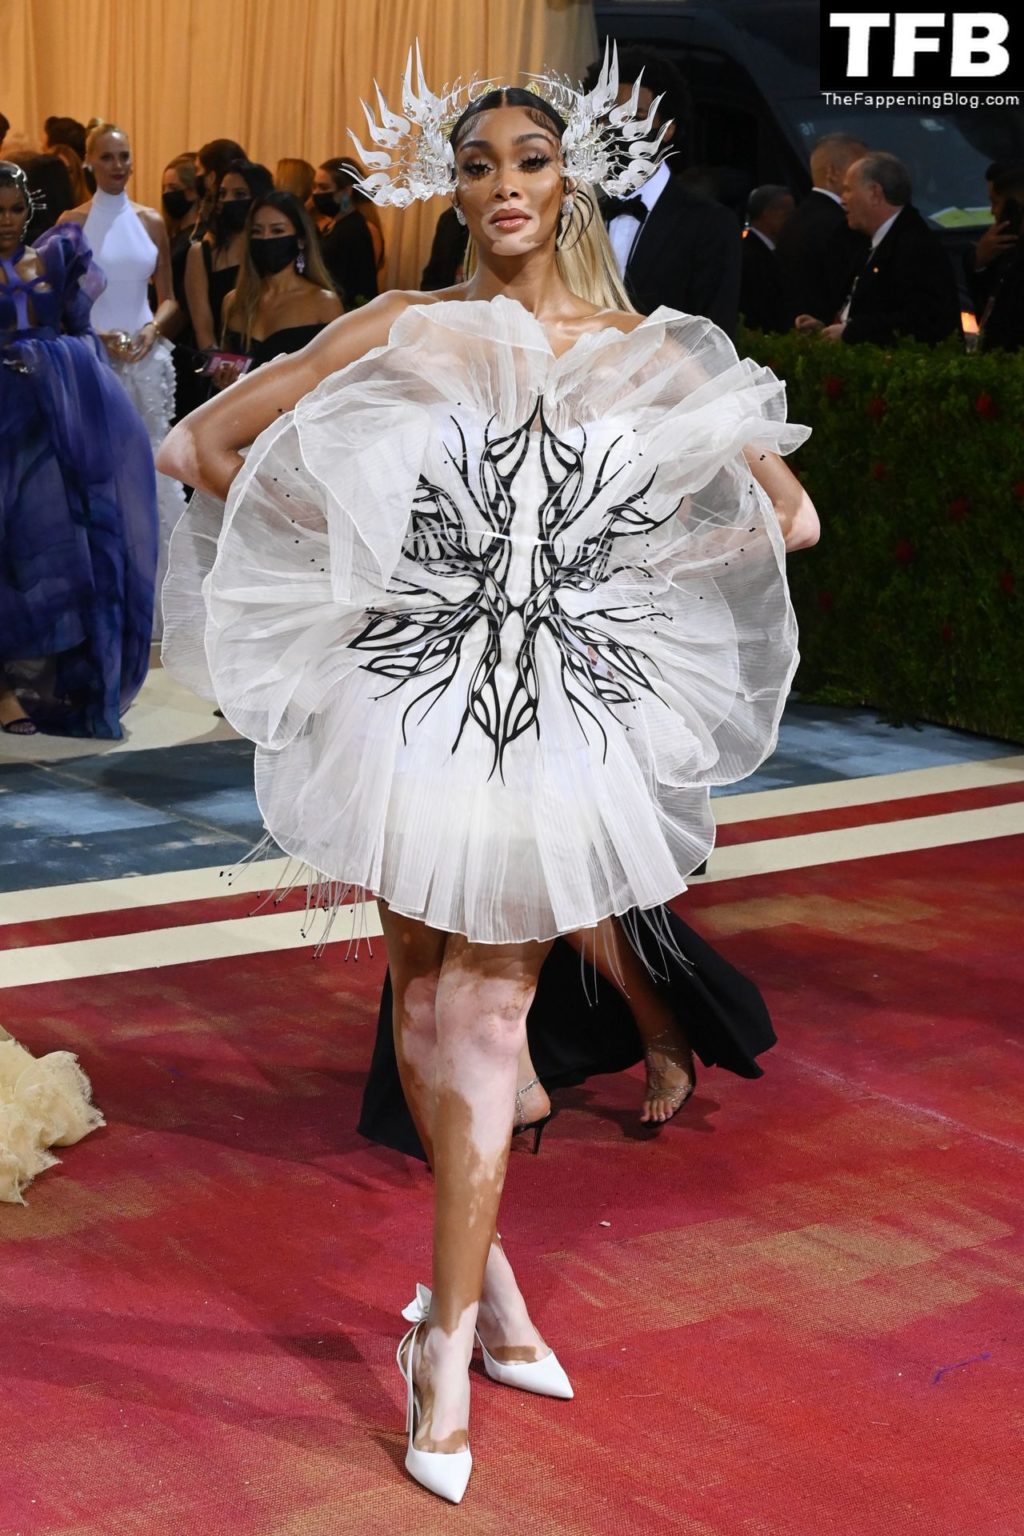 Winnie Harlow Flaunts Her Slender Legs at The 2022 Met Gala in NYC (80 Photos)